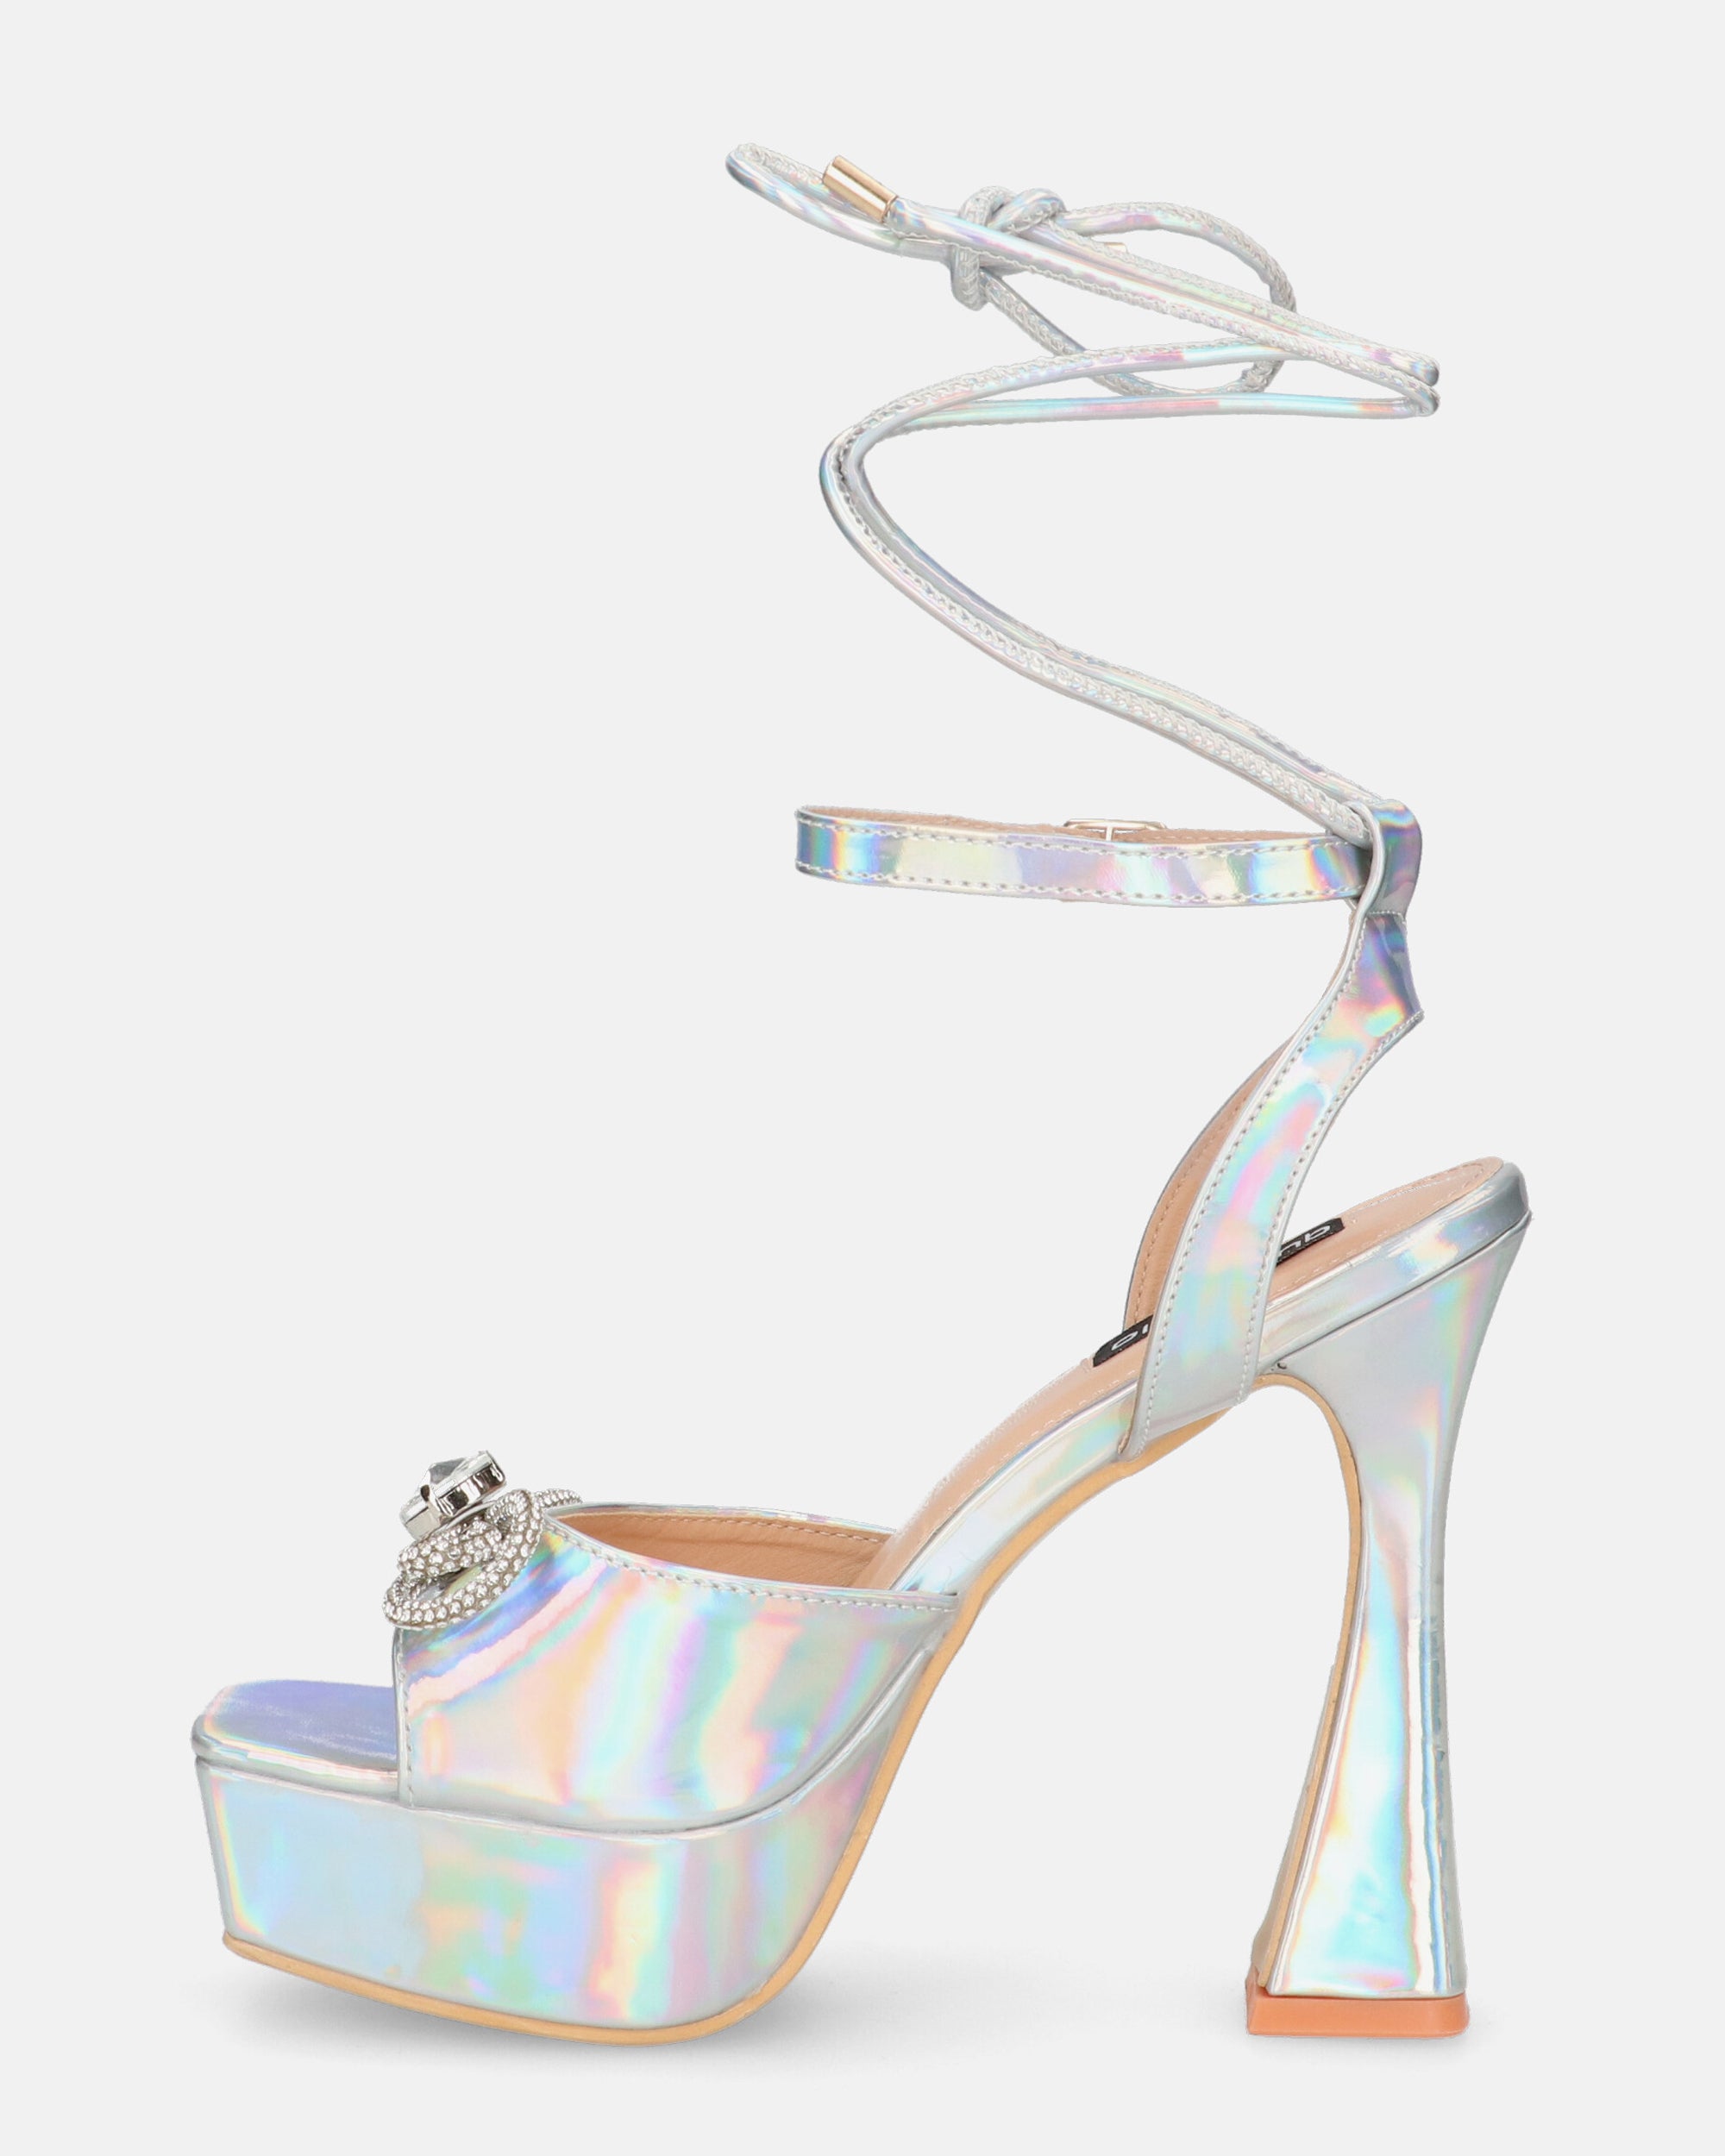 HOLLY - chaussures à talons hauts en glassy avec effet opalescent et pierres précieuses